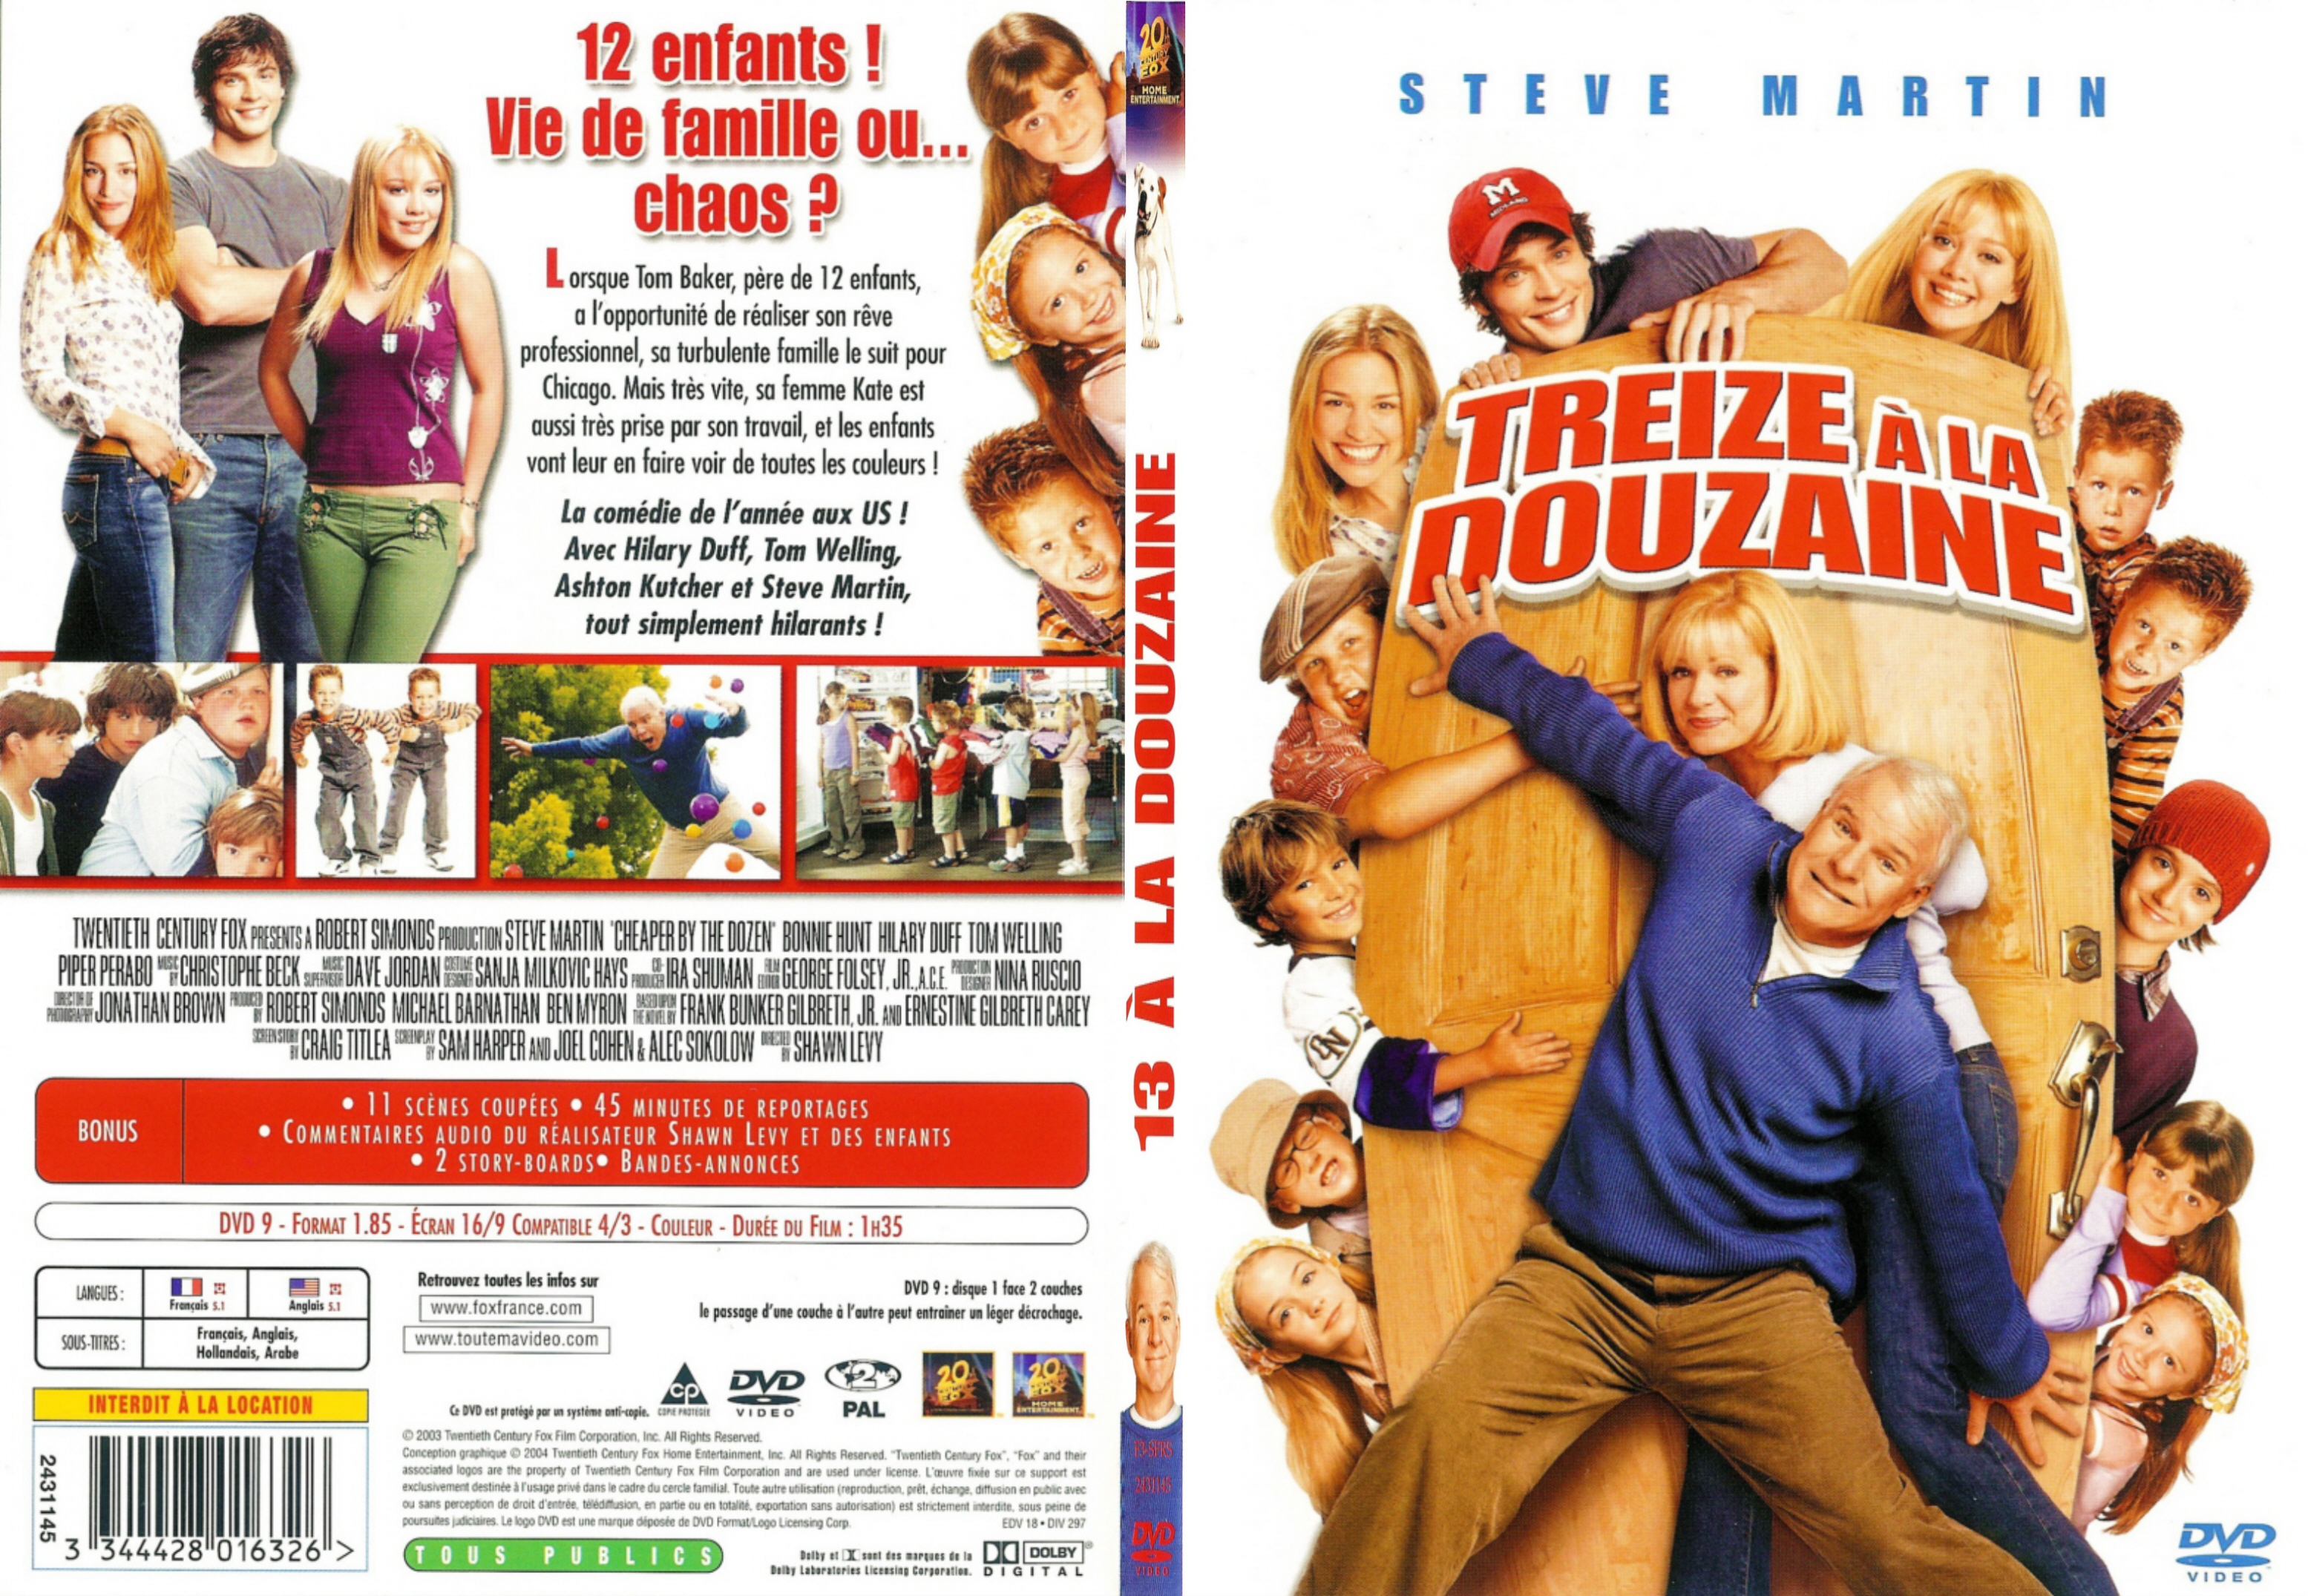 Jaquette DVD Treize a la douzaine - SLIM